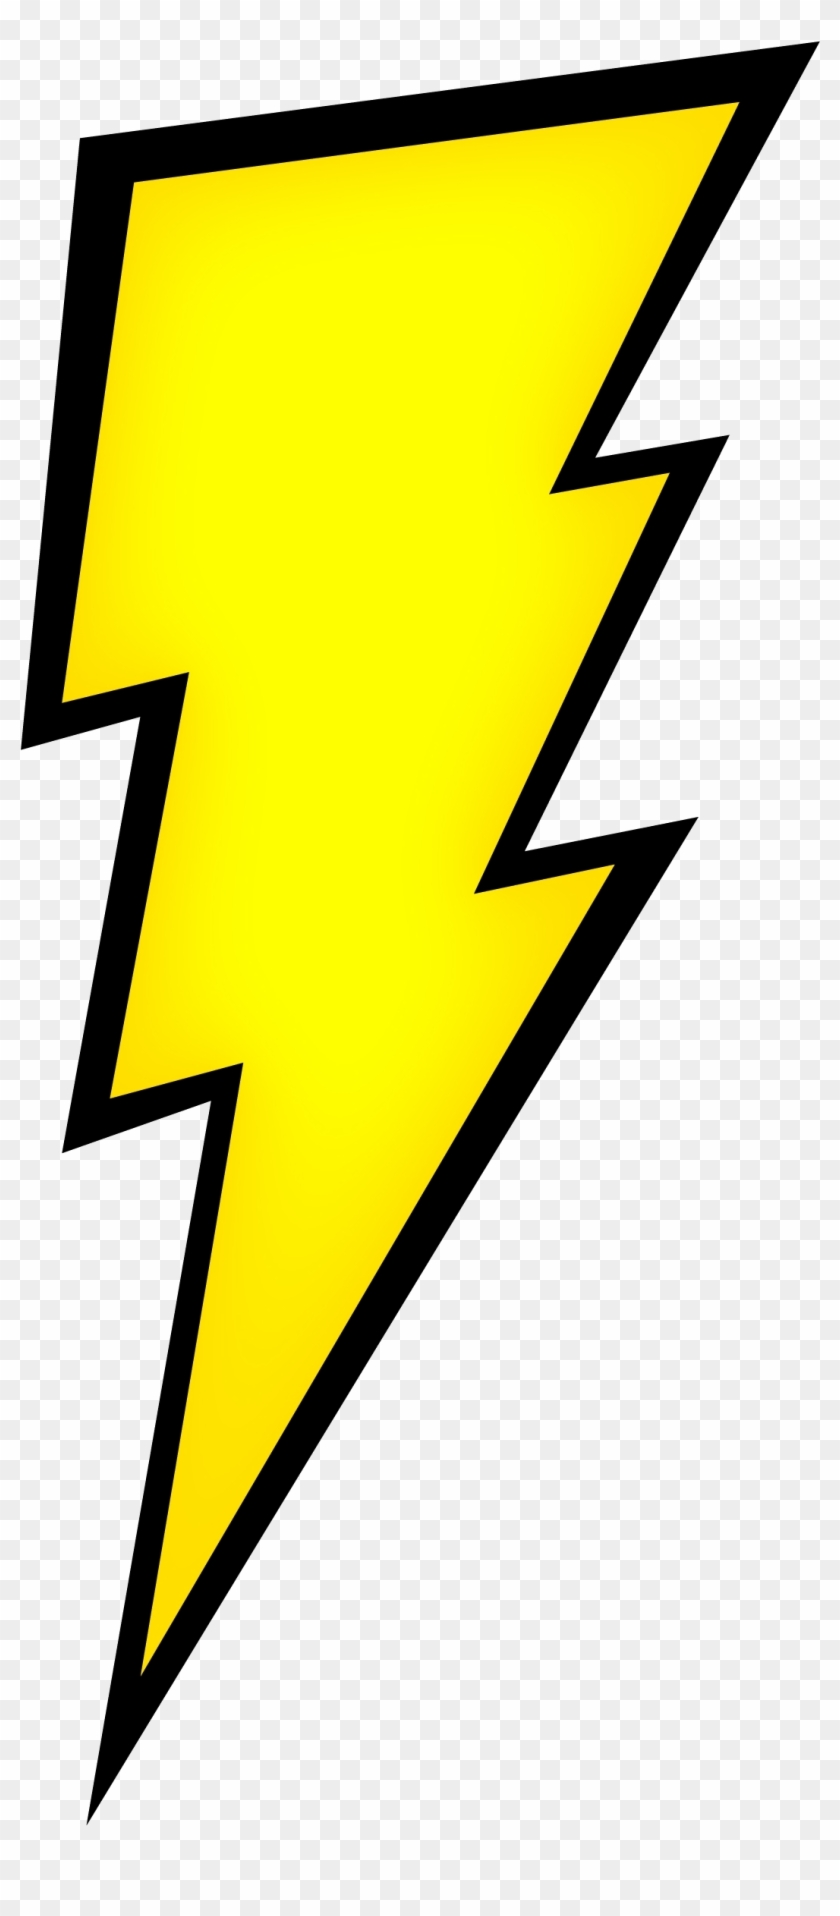 Lighting Bolt Png - Power Ranger Lightning Bolt #109652